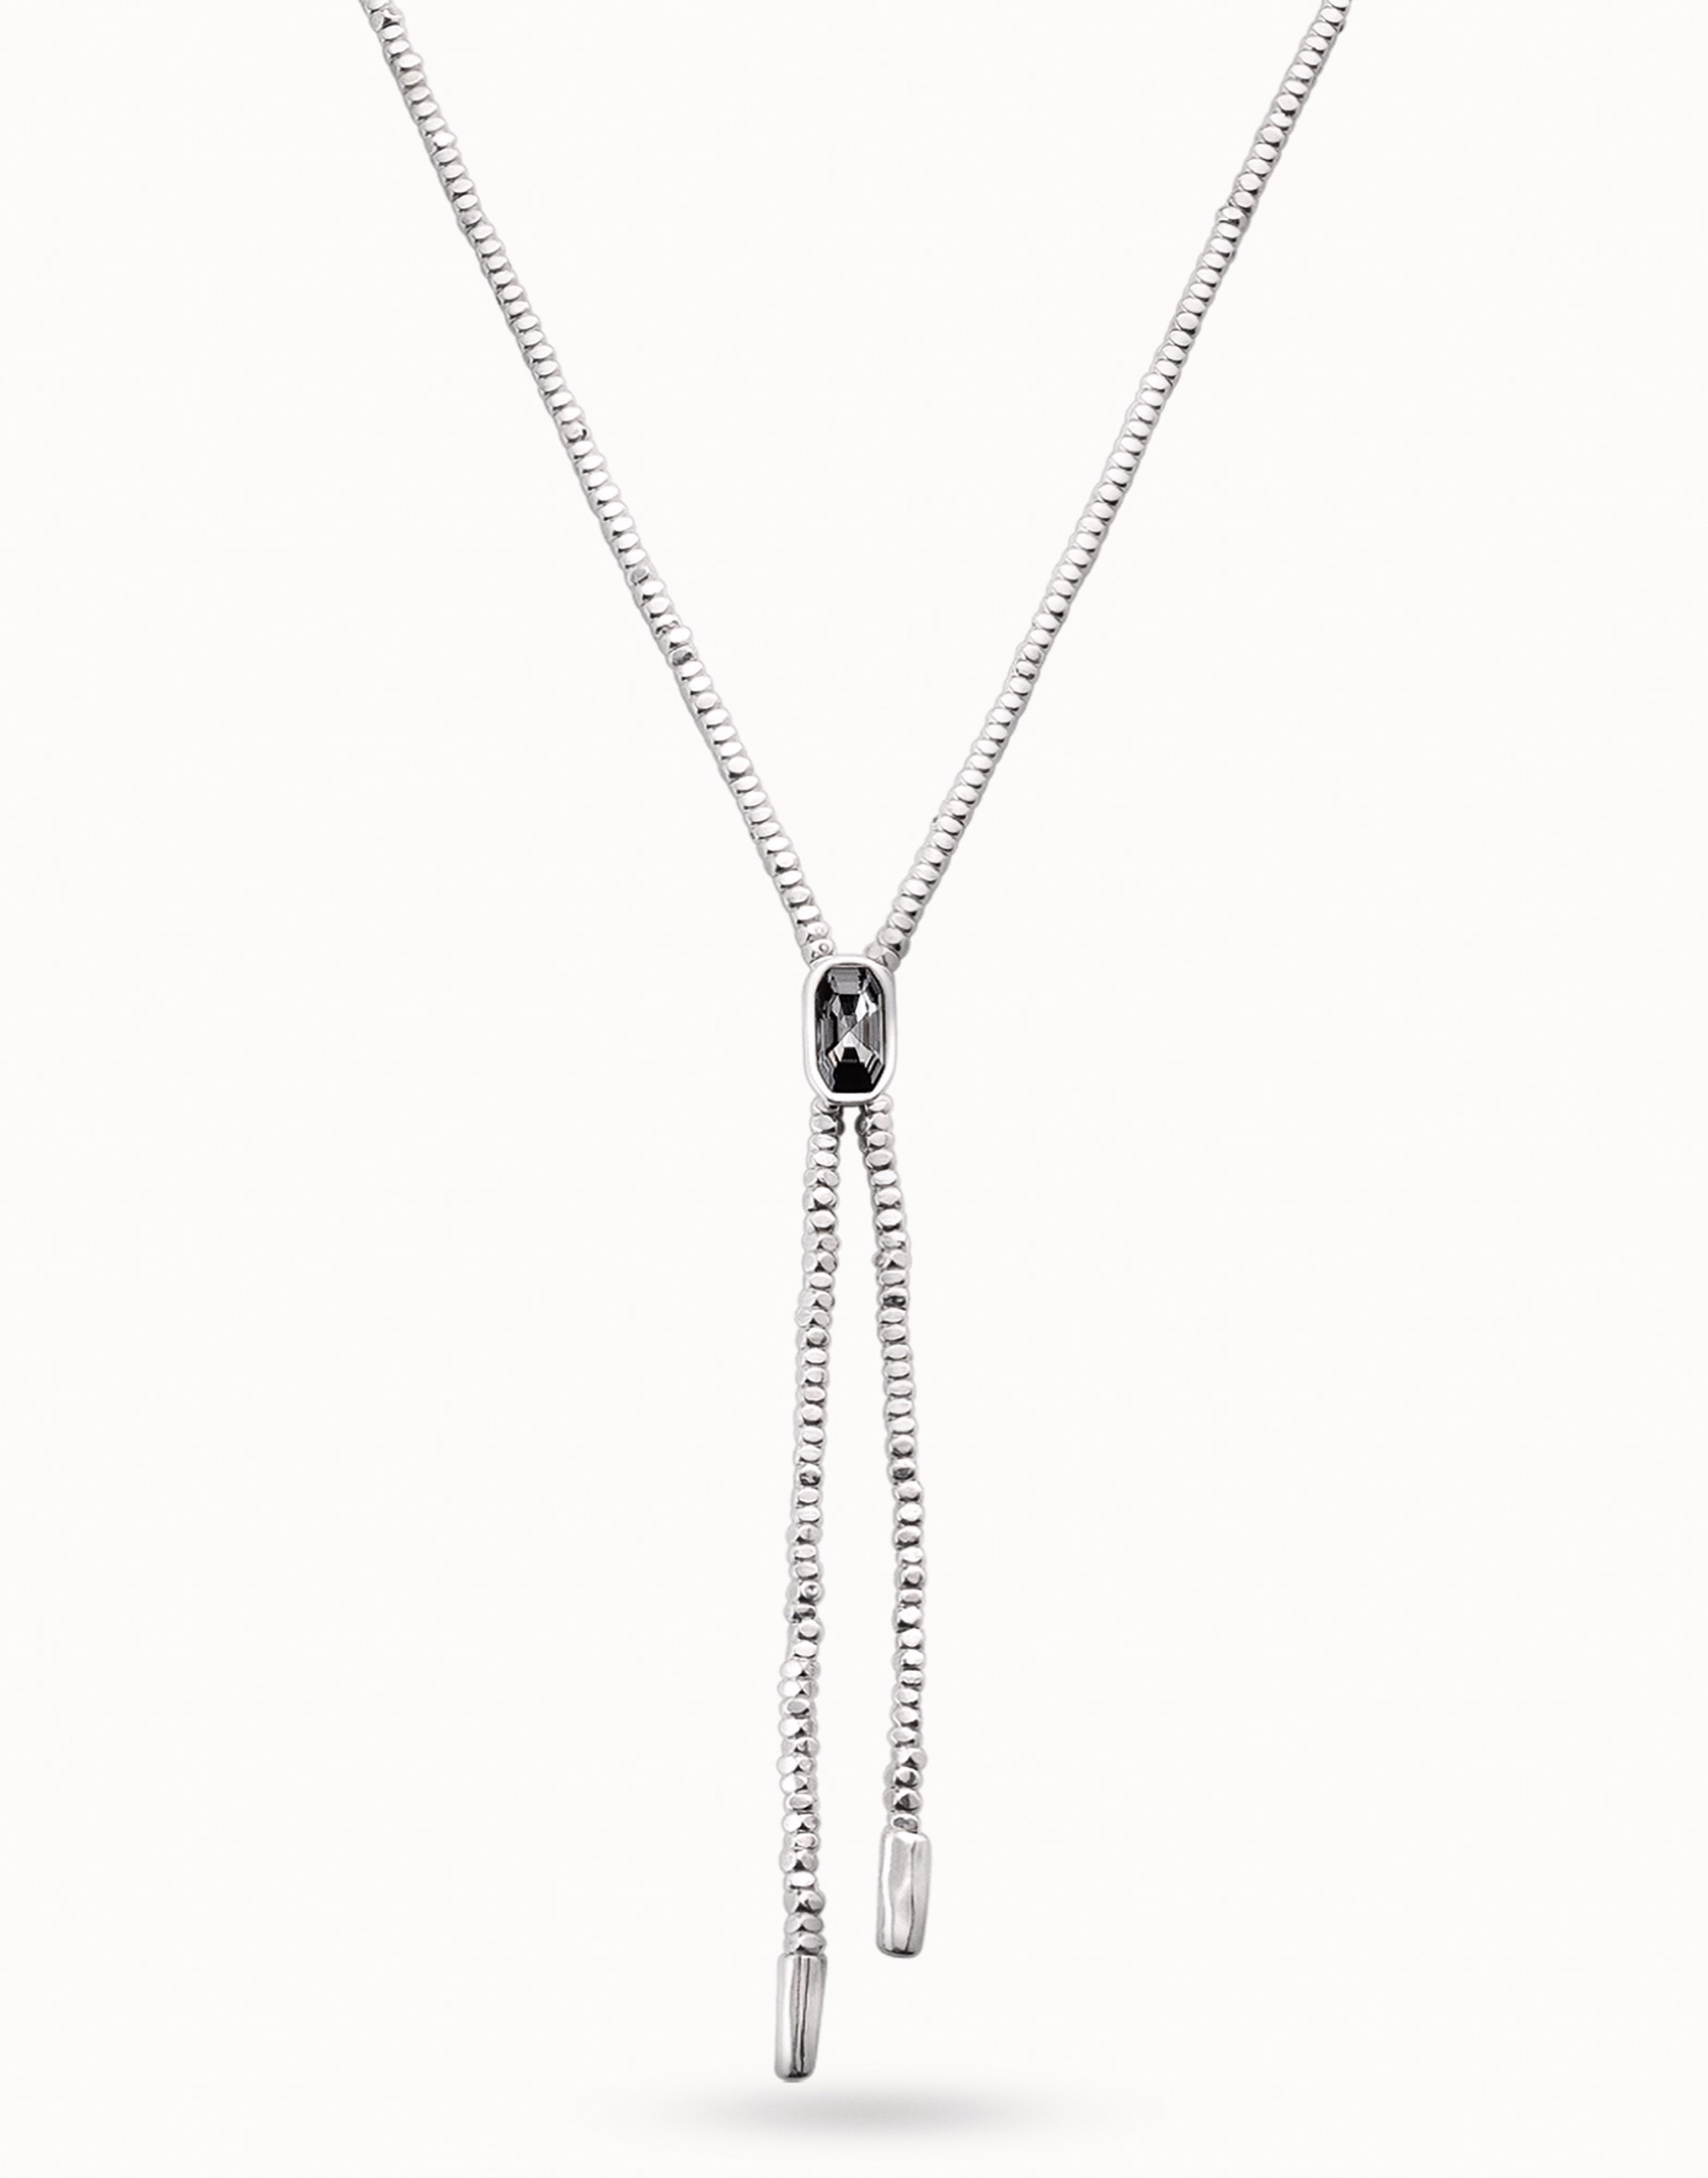 6980 Cobra necklace by UNO DE 50